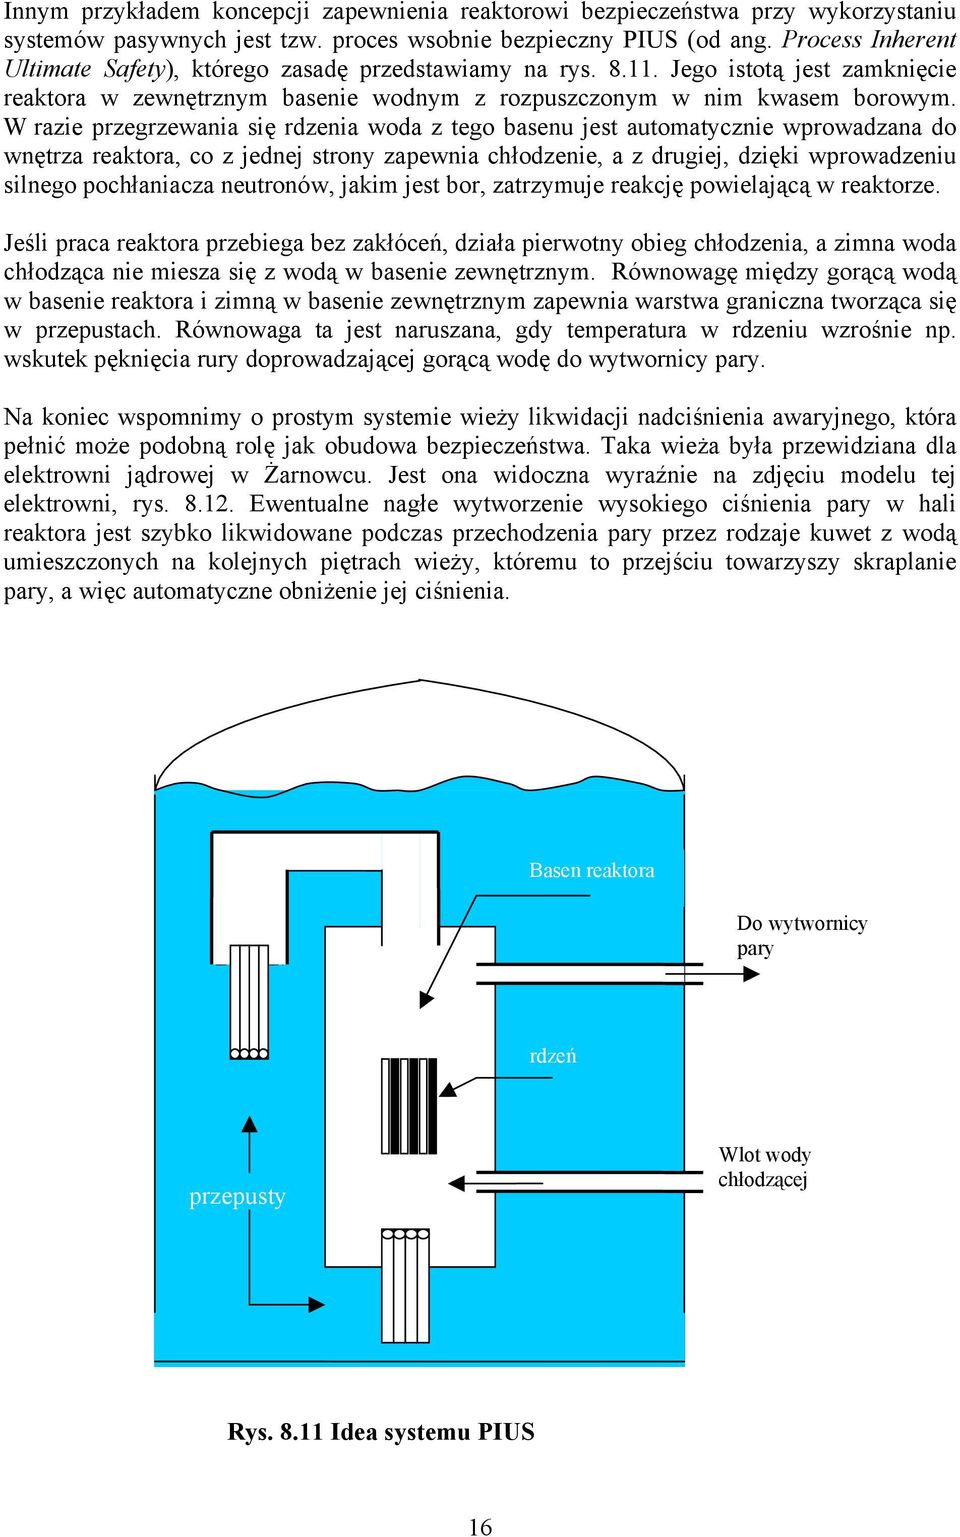 W razie przegrzewania się rdzenia woda z tego basenu jest automatycznie wprowadzana do wnętrza reaktora, co z jednej strony zapewnia chłodzenie, a z drugiej, dzięki wprowadzeniu silnego pochłaniacza